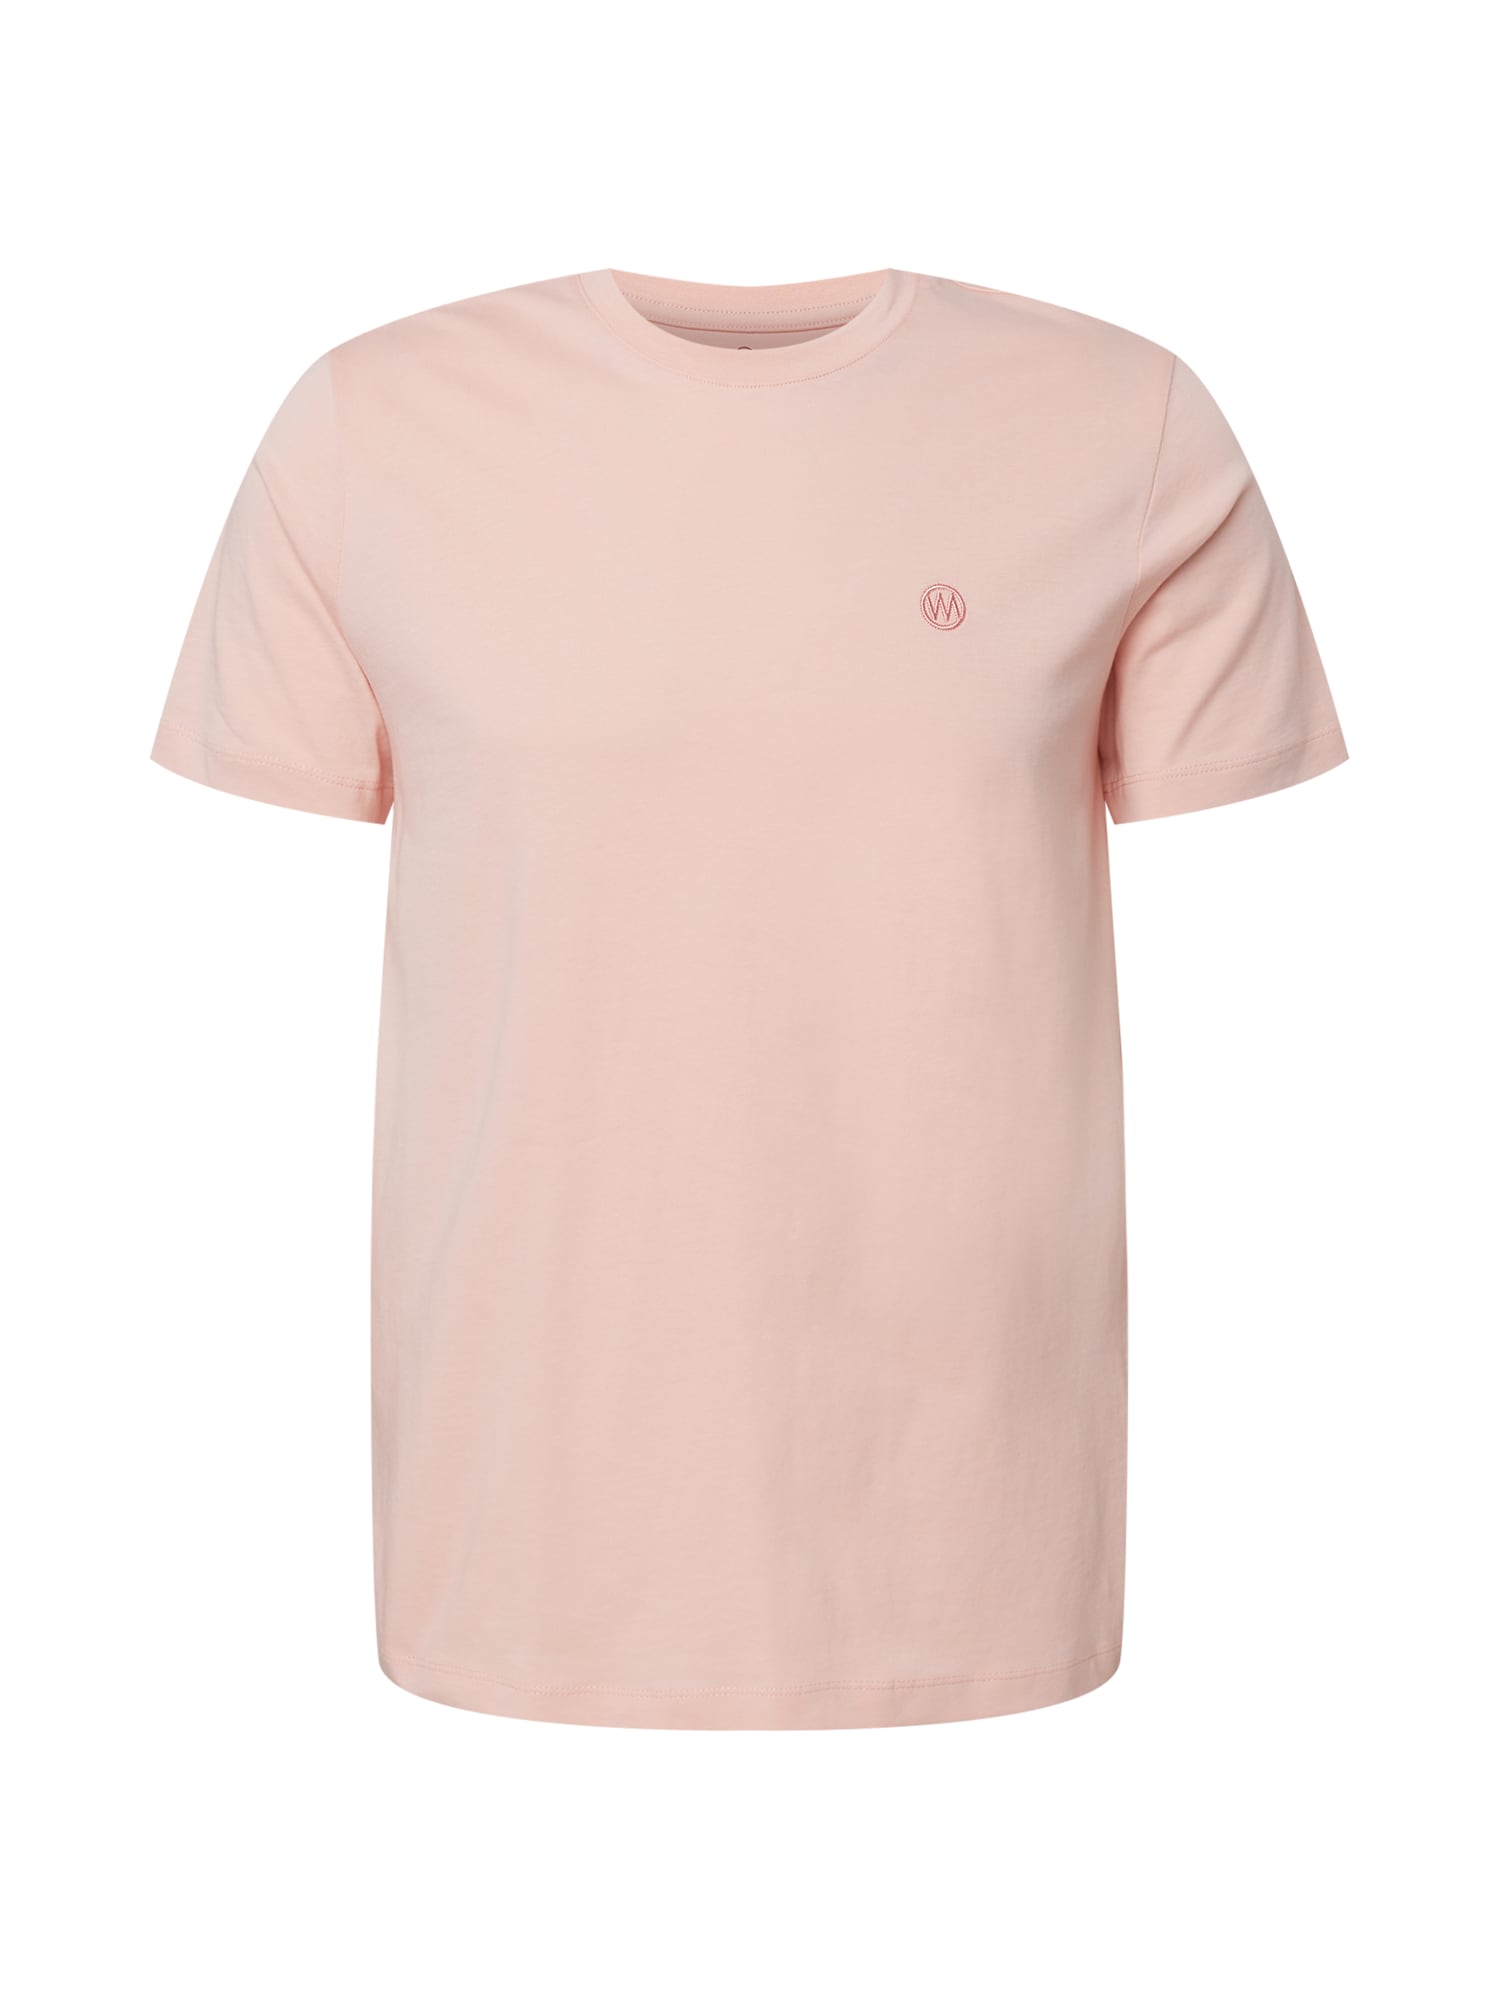 WESTMARK LONDON Marškinėliai 'VITAL' persikų spalva